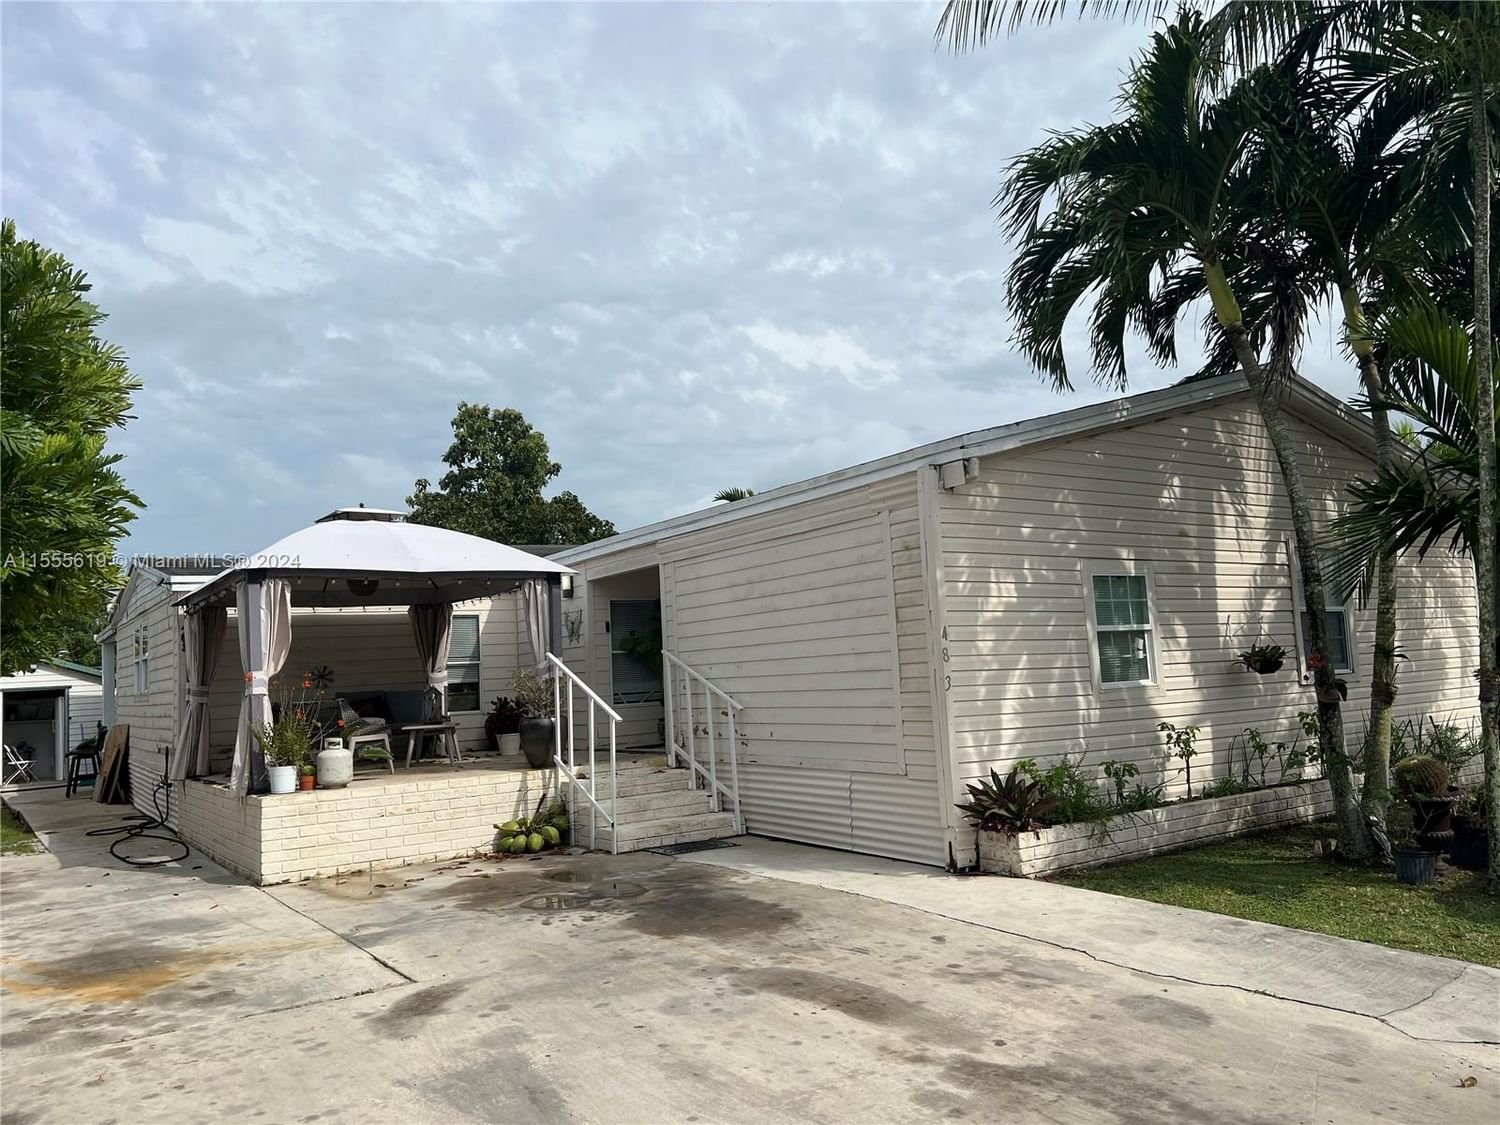 Real estate property located at 19800 180th Ave Lot 483, Miami-Dade County, AMERICANA VILLAGE CONDO, Miami, FL